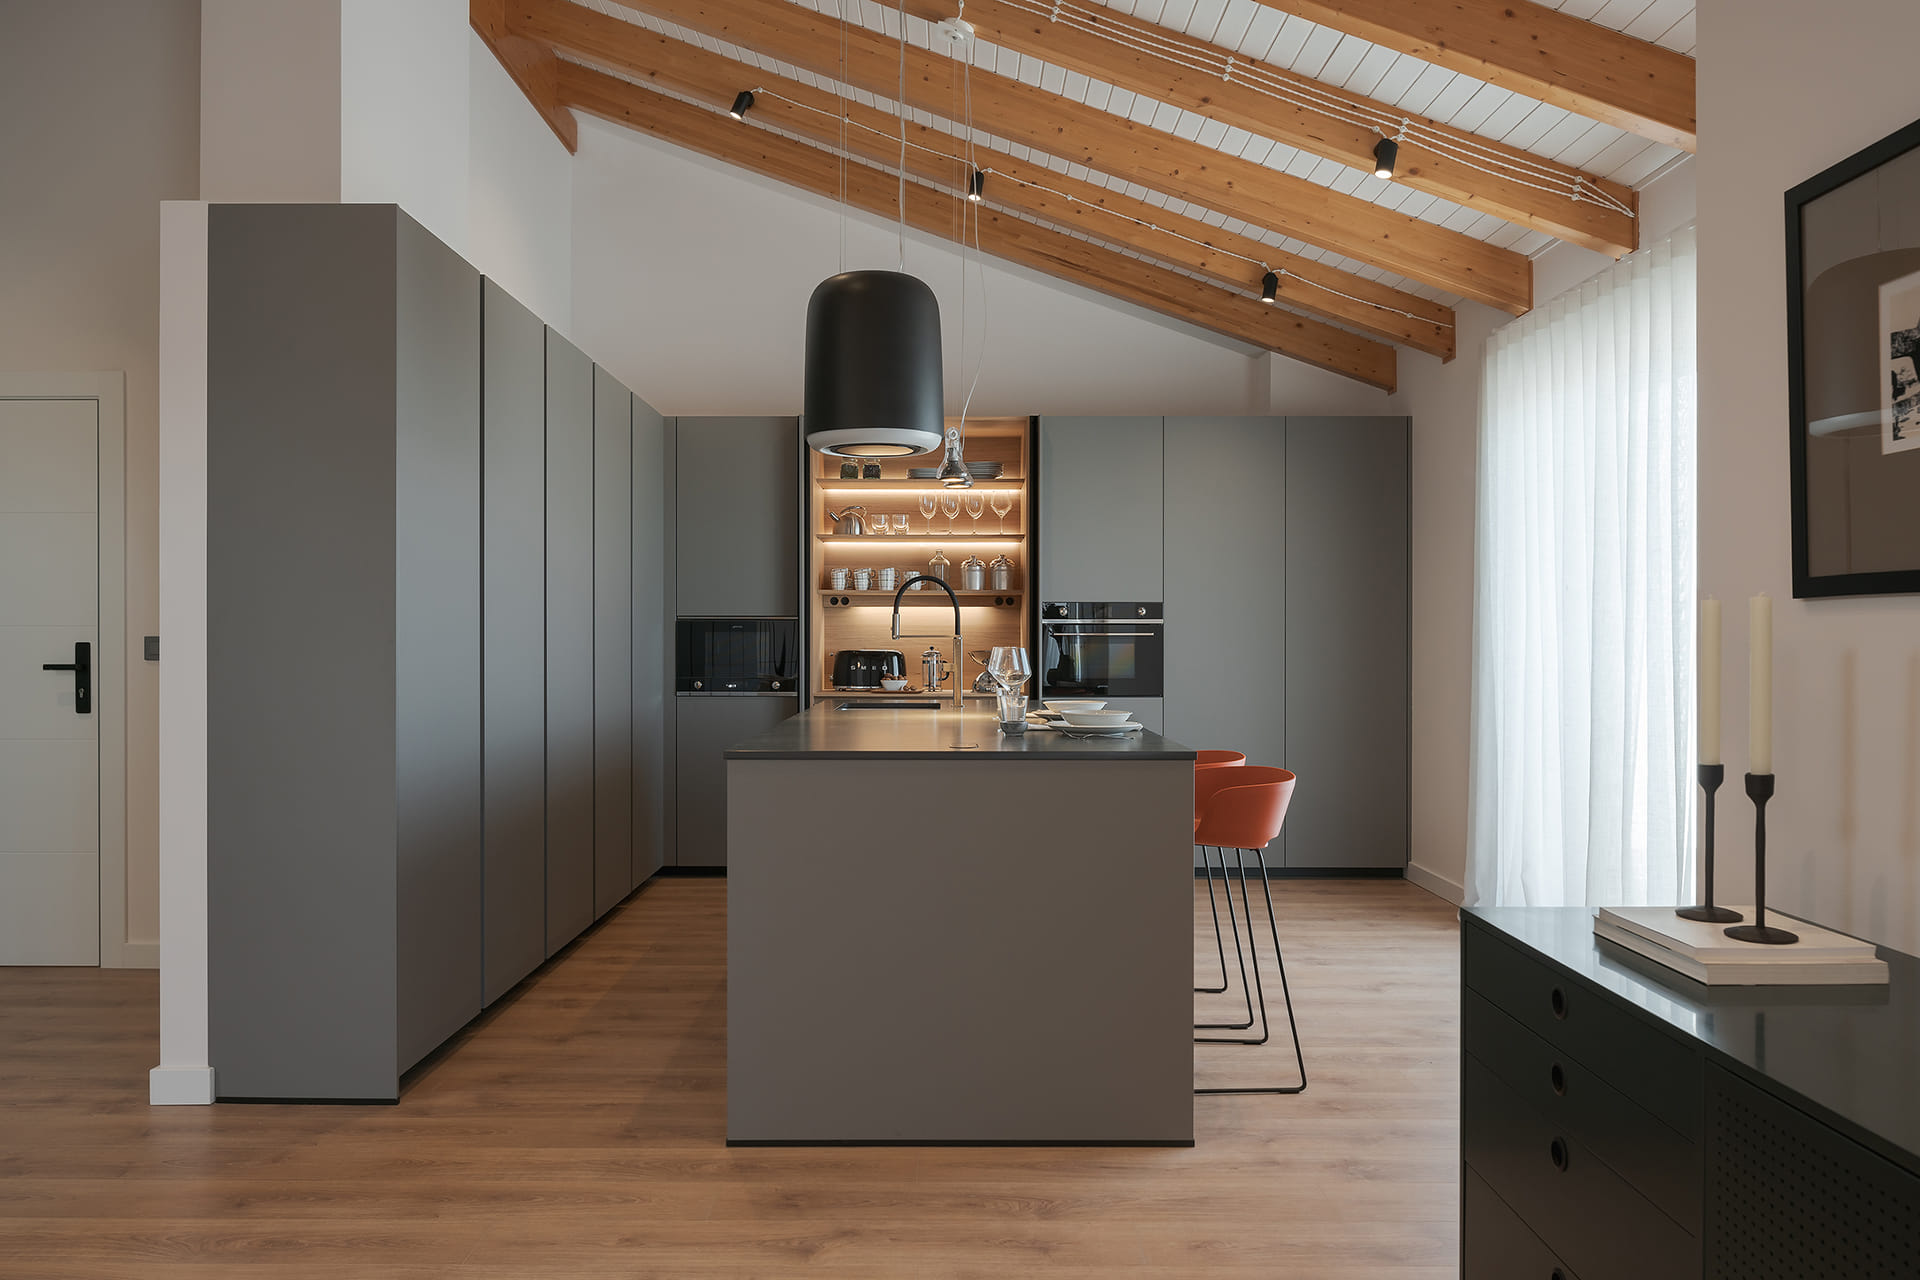 Grijze keuken met eiland en houten vloeren, open ontwerp naar de zitkamer.